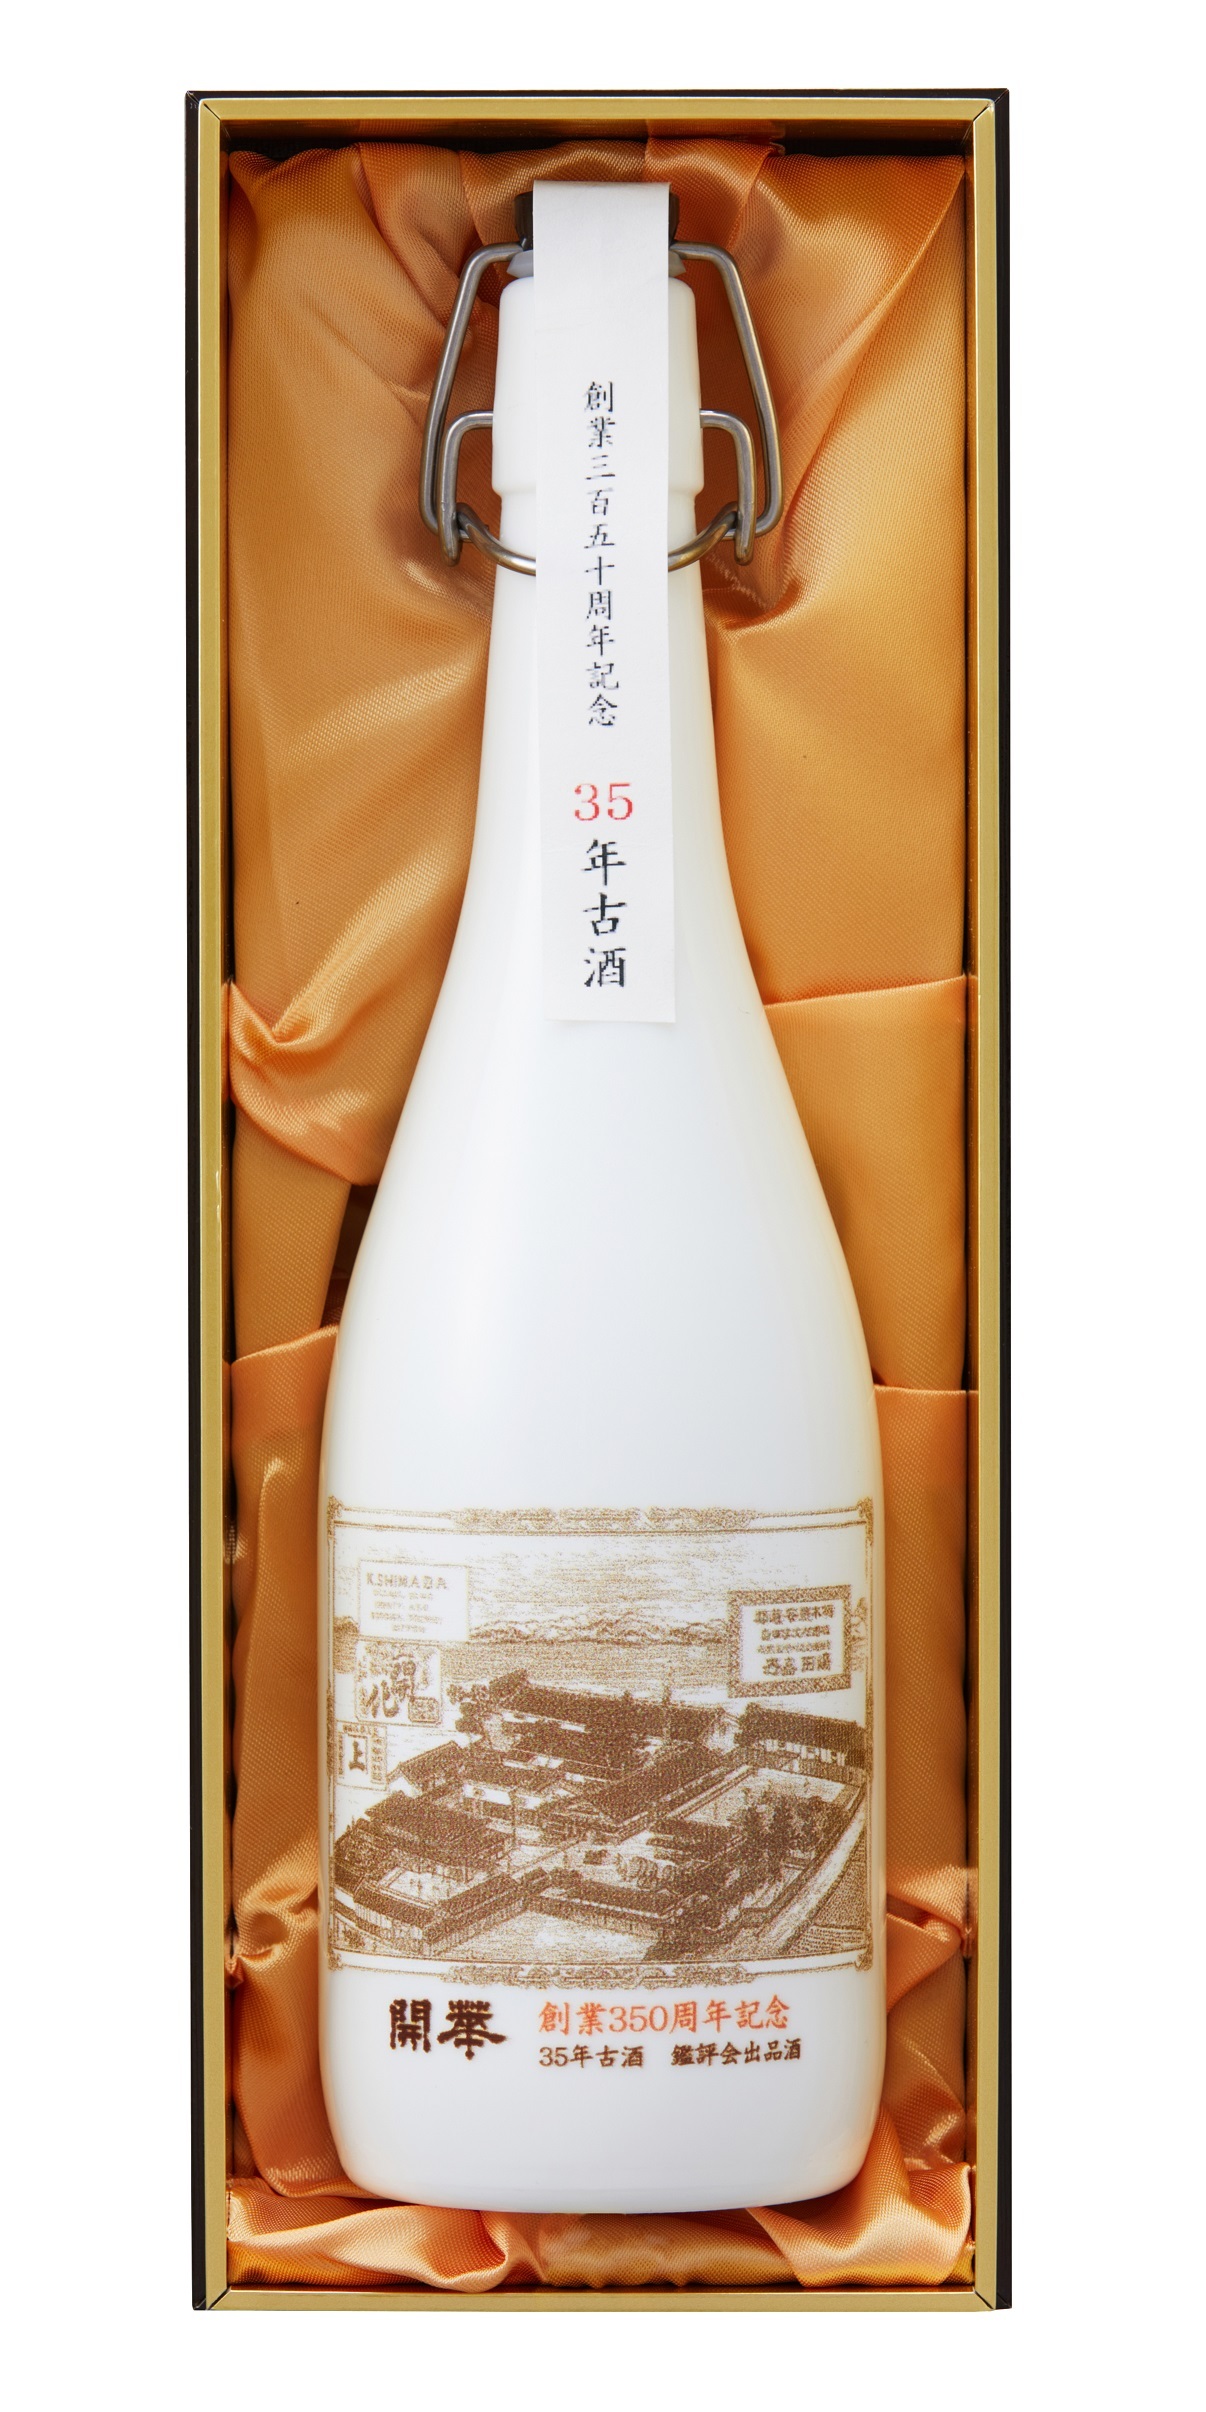 栃木県内最古の酒蔵 第一酒造株式会社が
創業350周年記念酒(3種類)限定発売